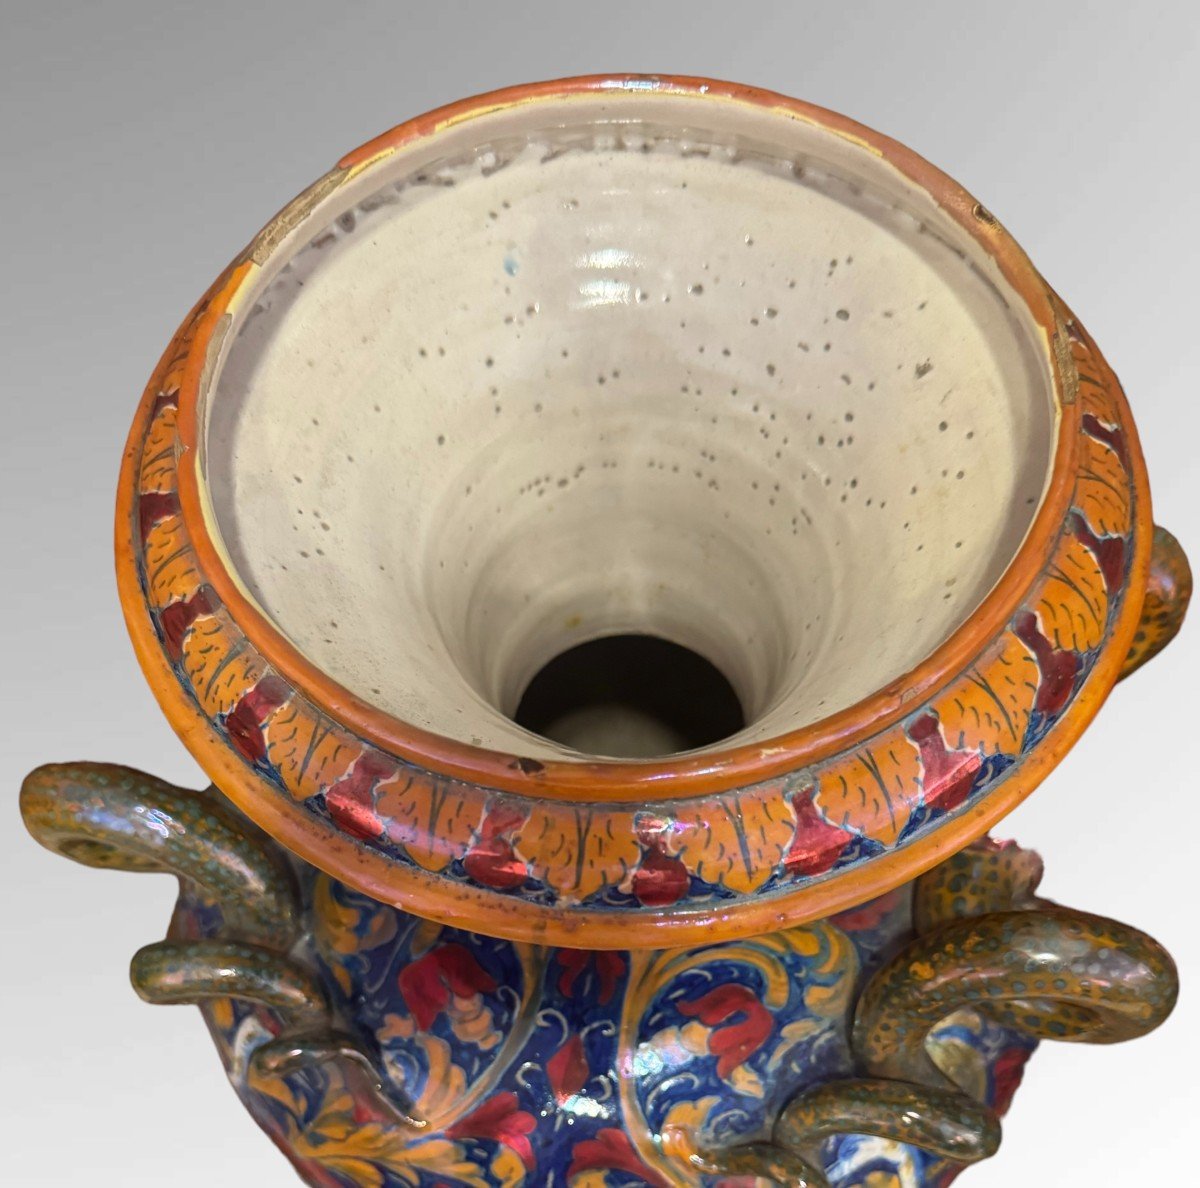 Gualdo Tadino - Luster Ceramic Vase-photo-2